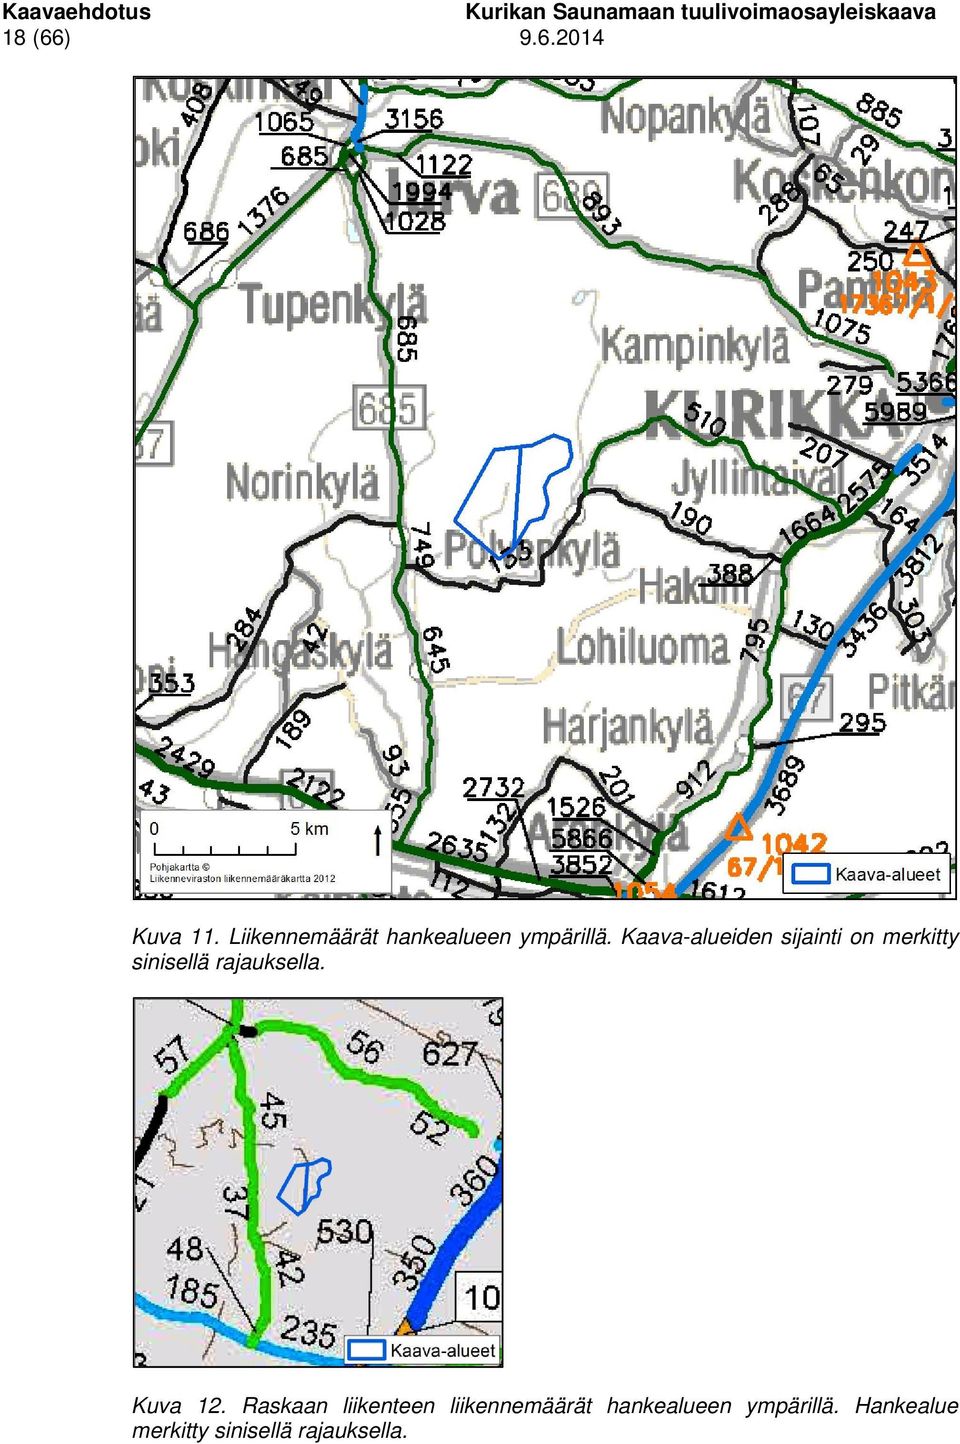 Kaava-alueiden sijainti on merkitty sinisellä rajauksella.